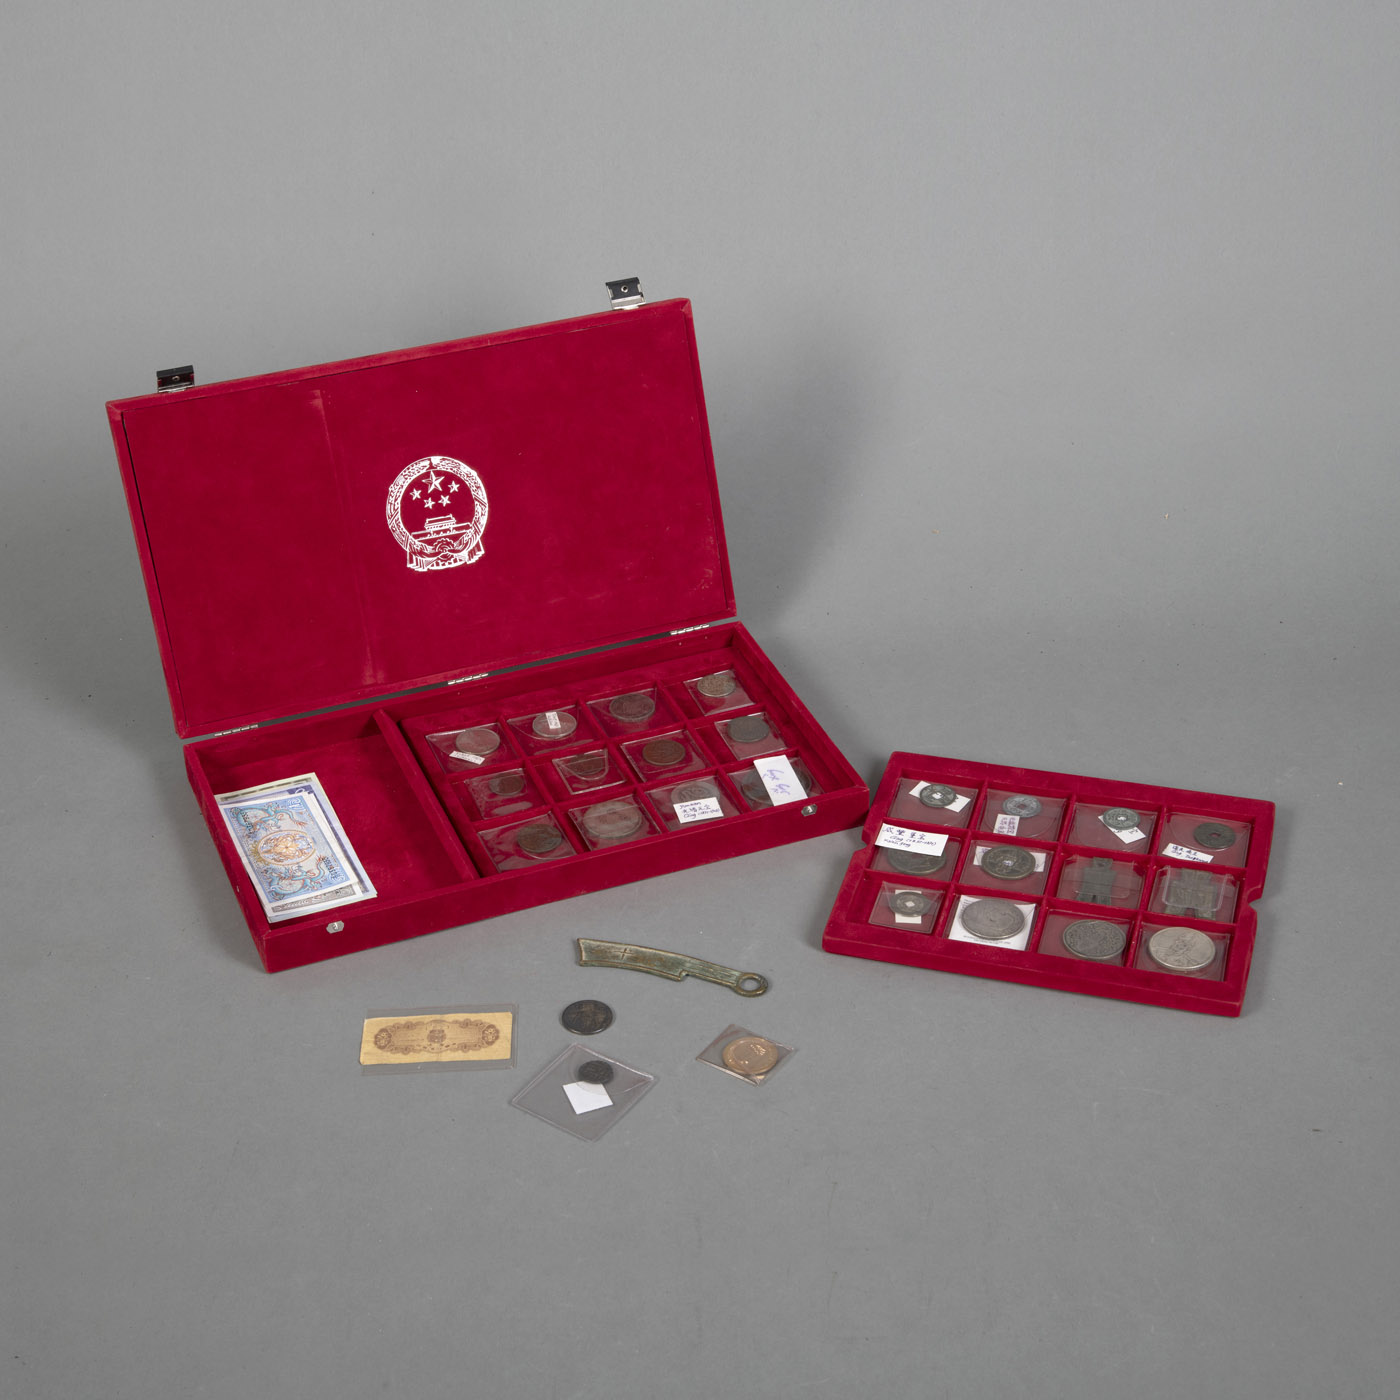 <b>Sammlung von Münzen, Geldscheinen und Briefmarken, in einer roten Samt-Schatulle</b>